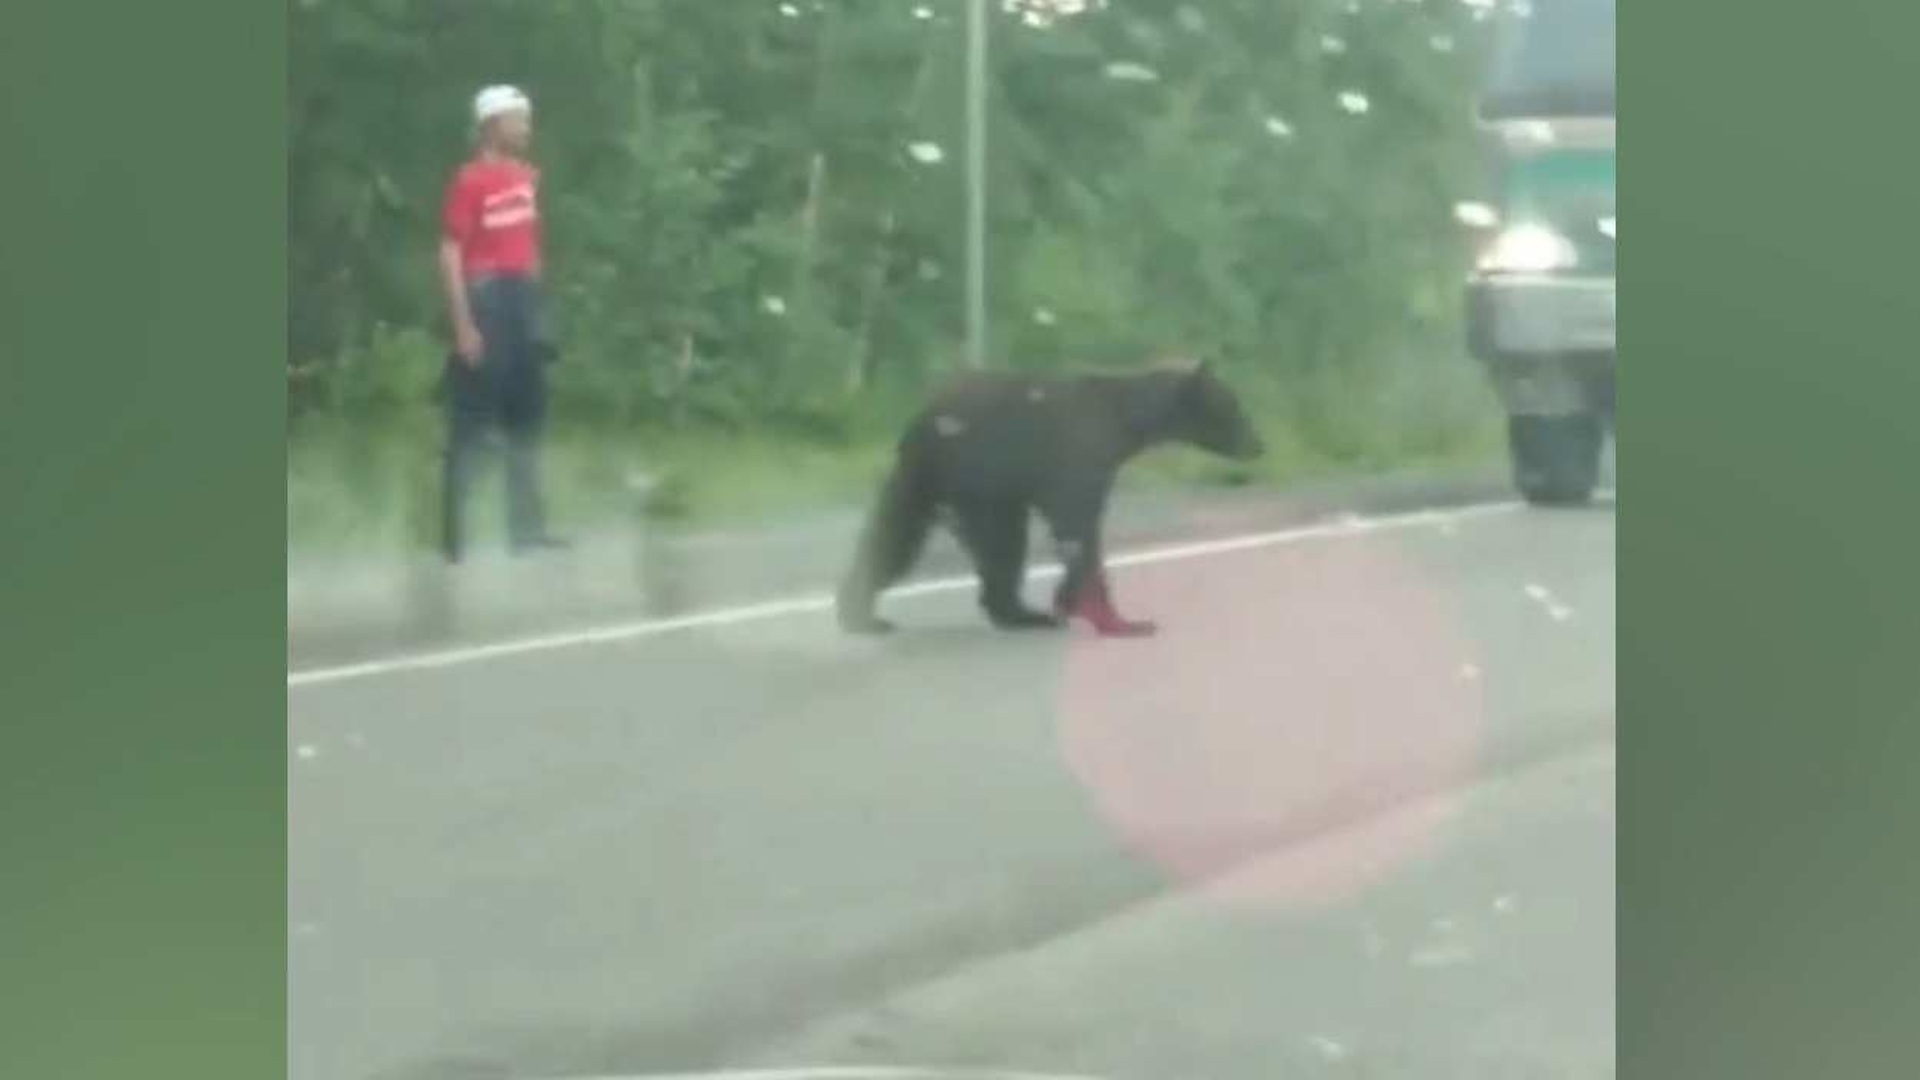 боксер убил медведя фото с места происшествия